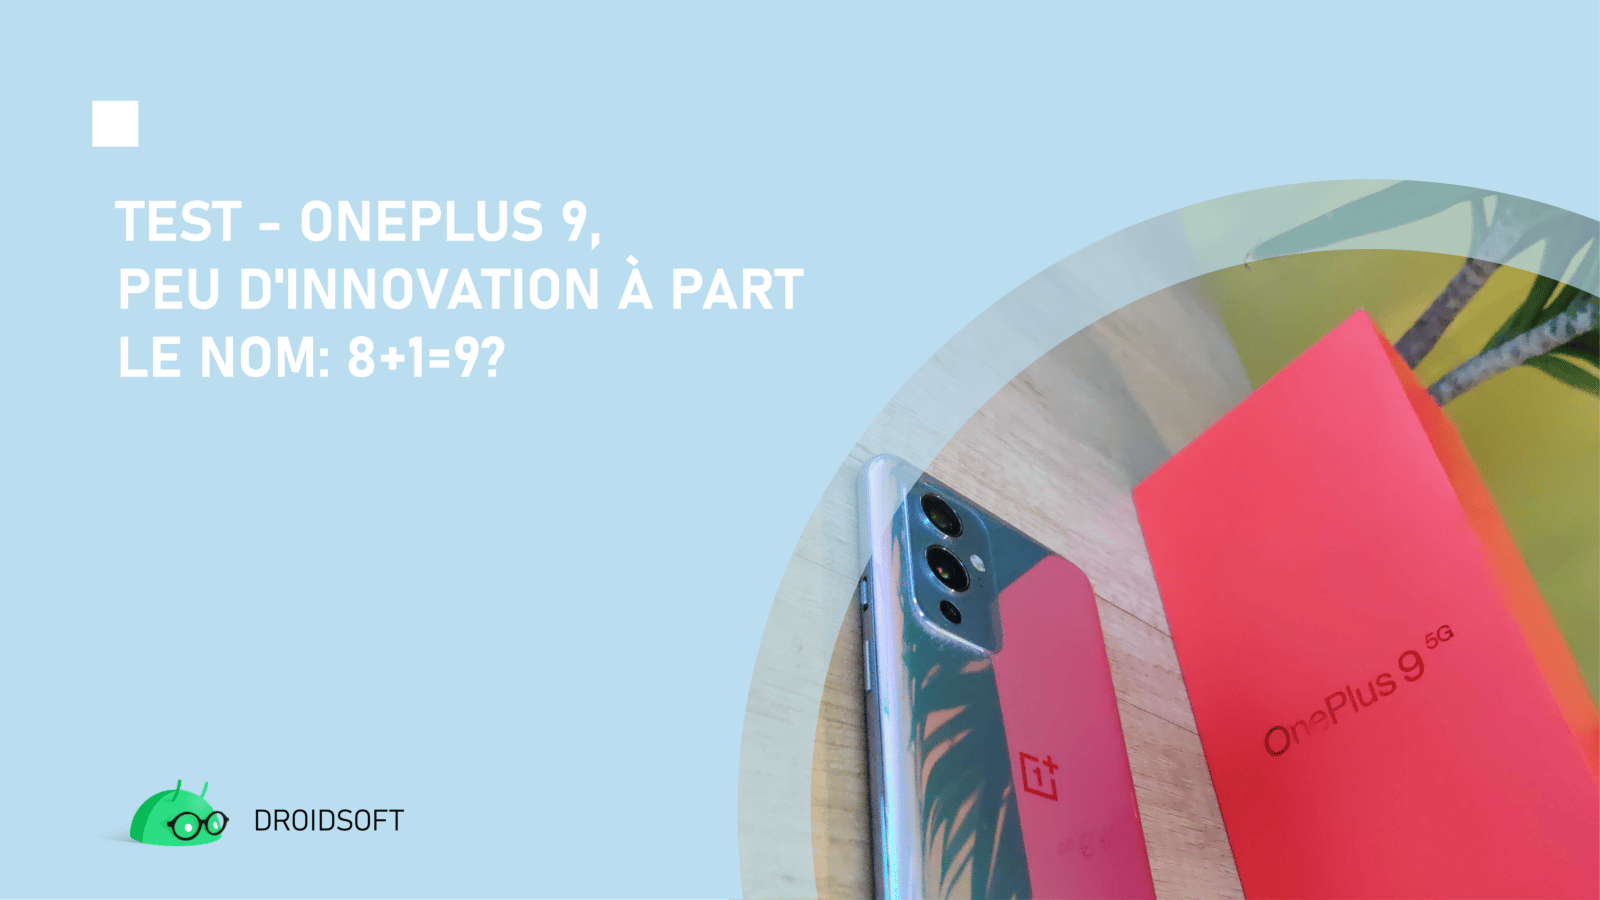 OnePlus 9, TEST &#8211; OnePlus 9, peu d&rsquo;innovation à part le nom: 8+1=9?